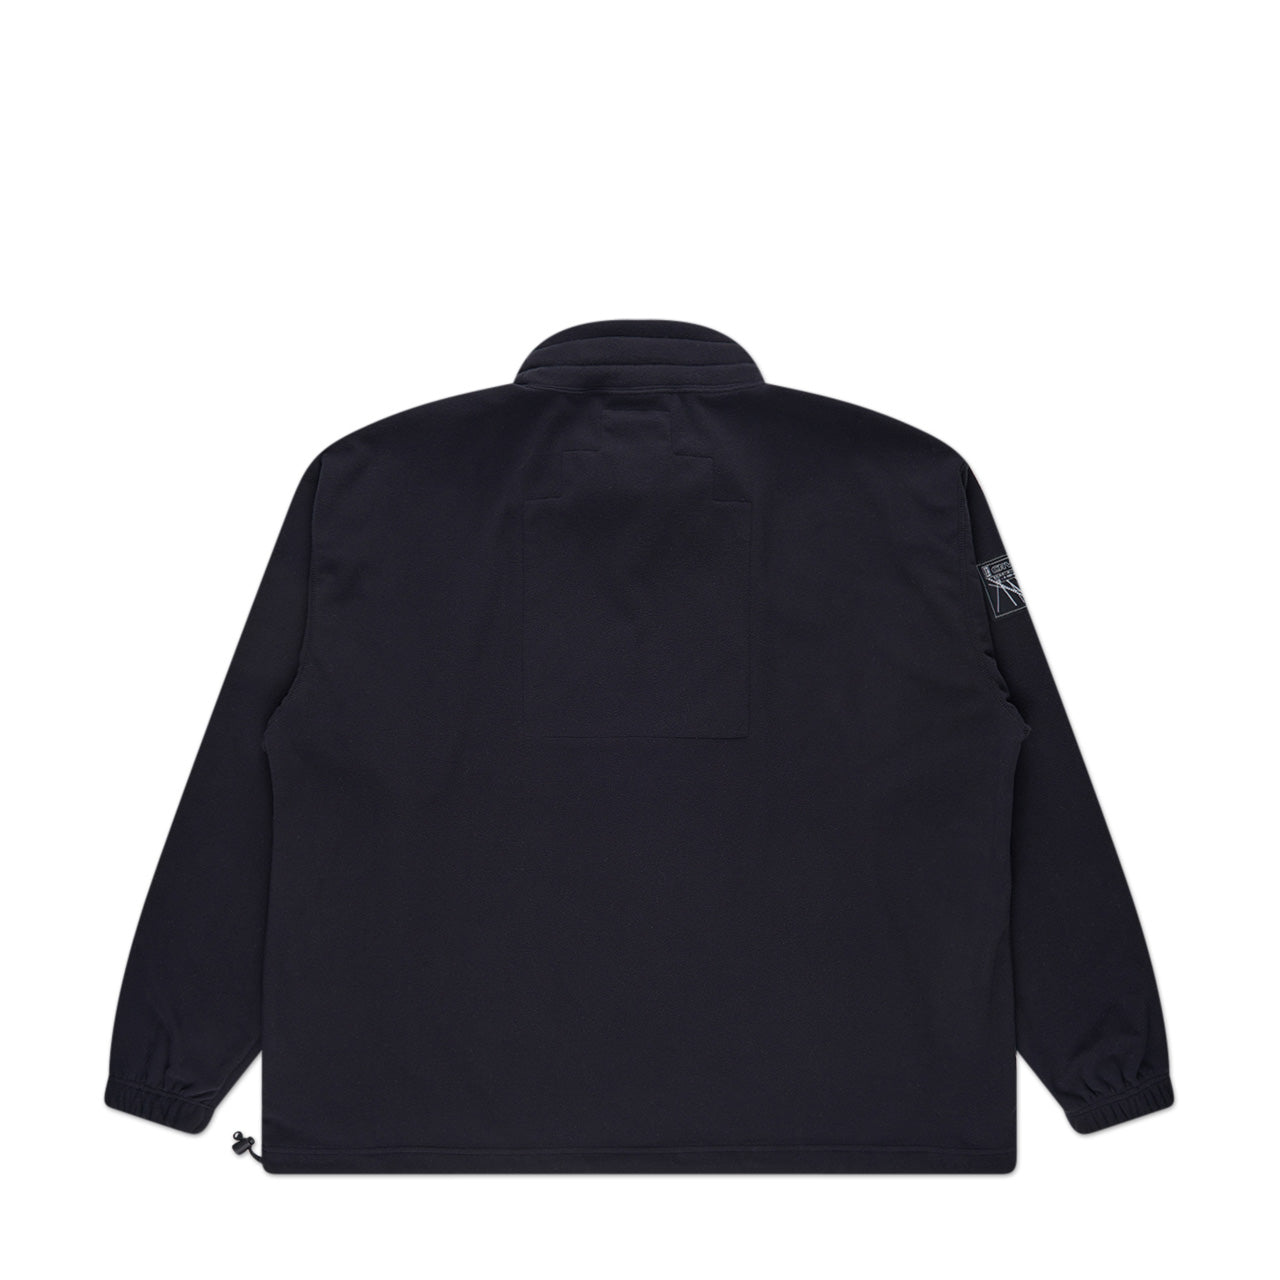 cav empt high neck fleece pullover (black)